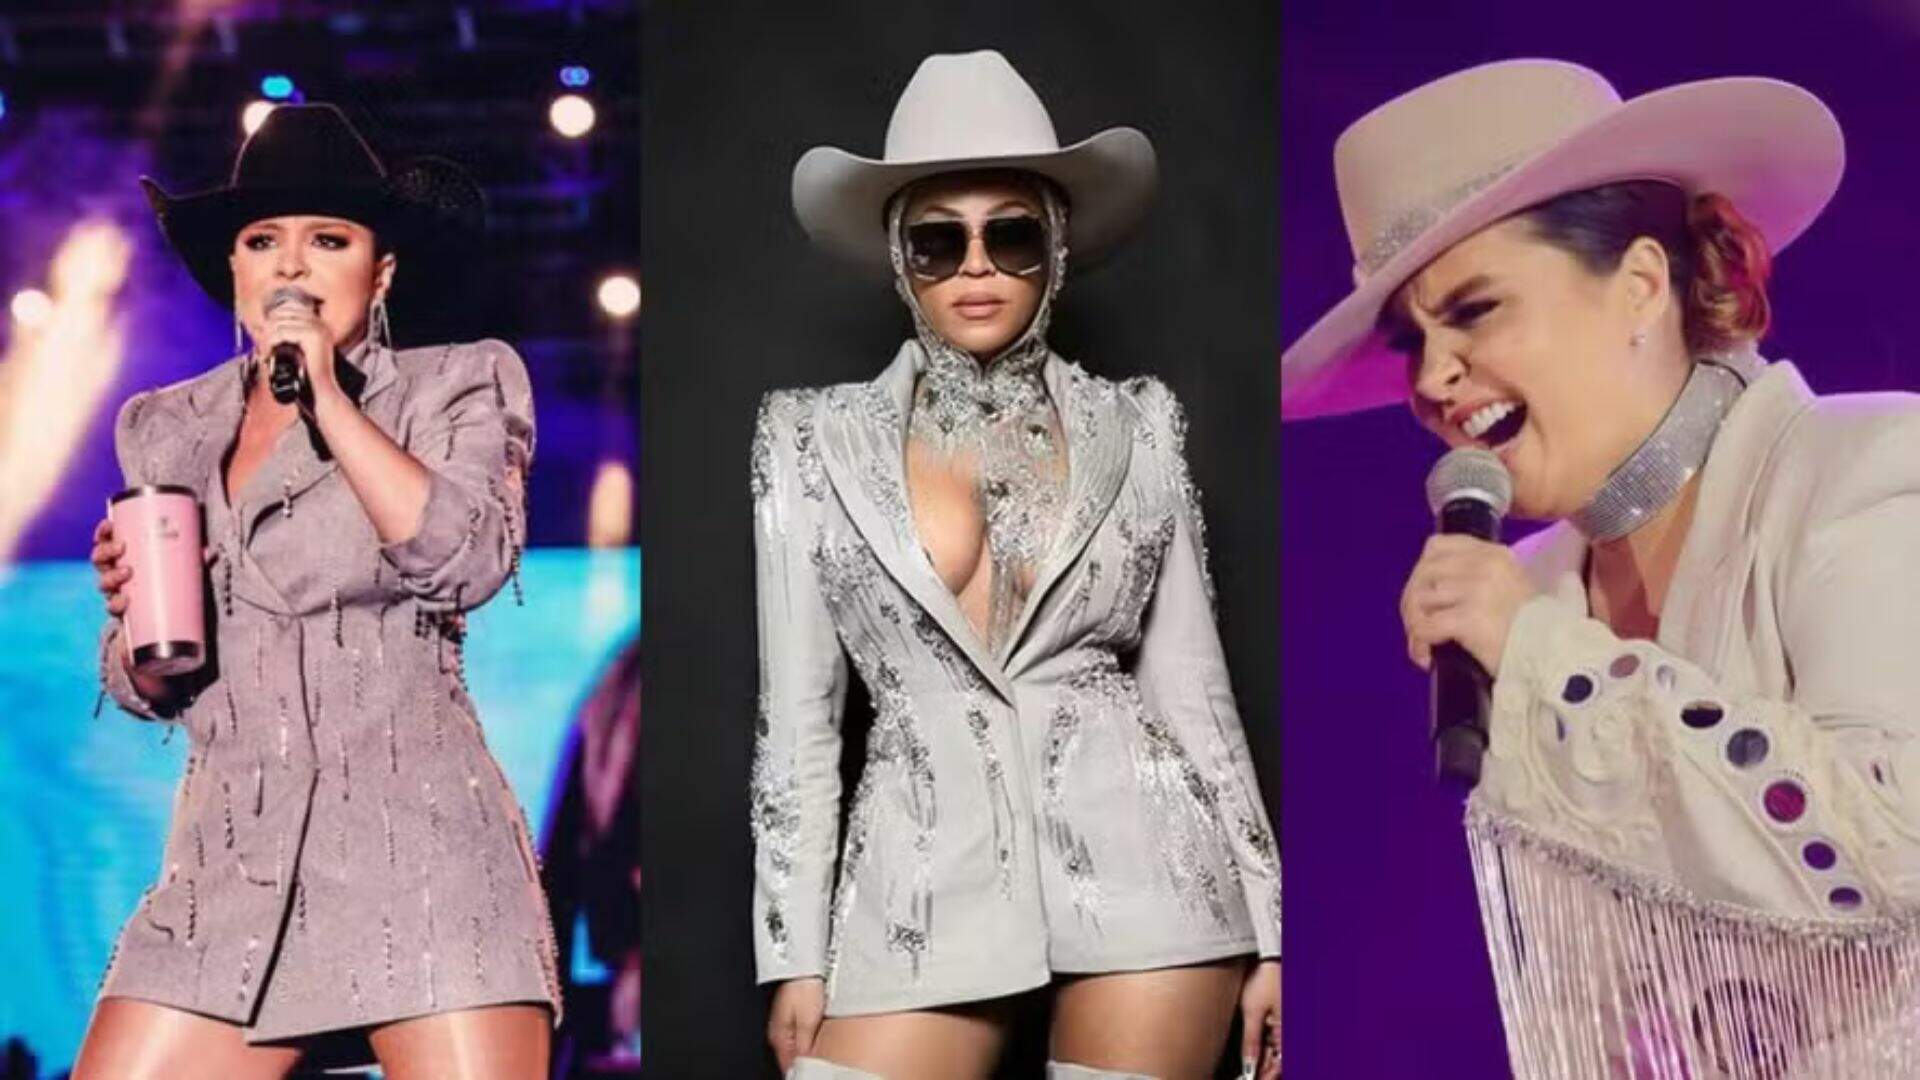 Beyoncé se inspirou no visual de Maiara? Semelhança entre looks emociona sertaneja: “Estou no caminho certo” - Metropolitana FM